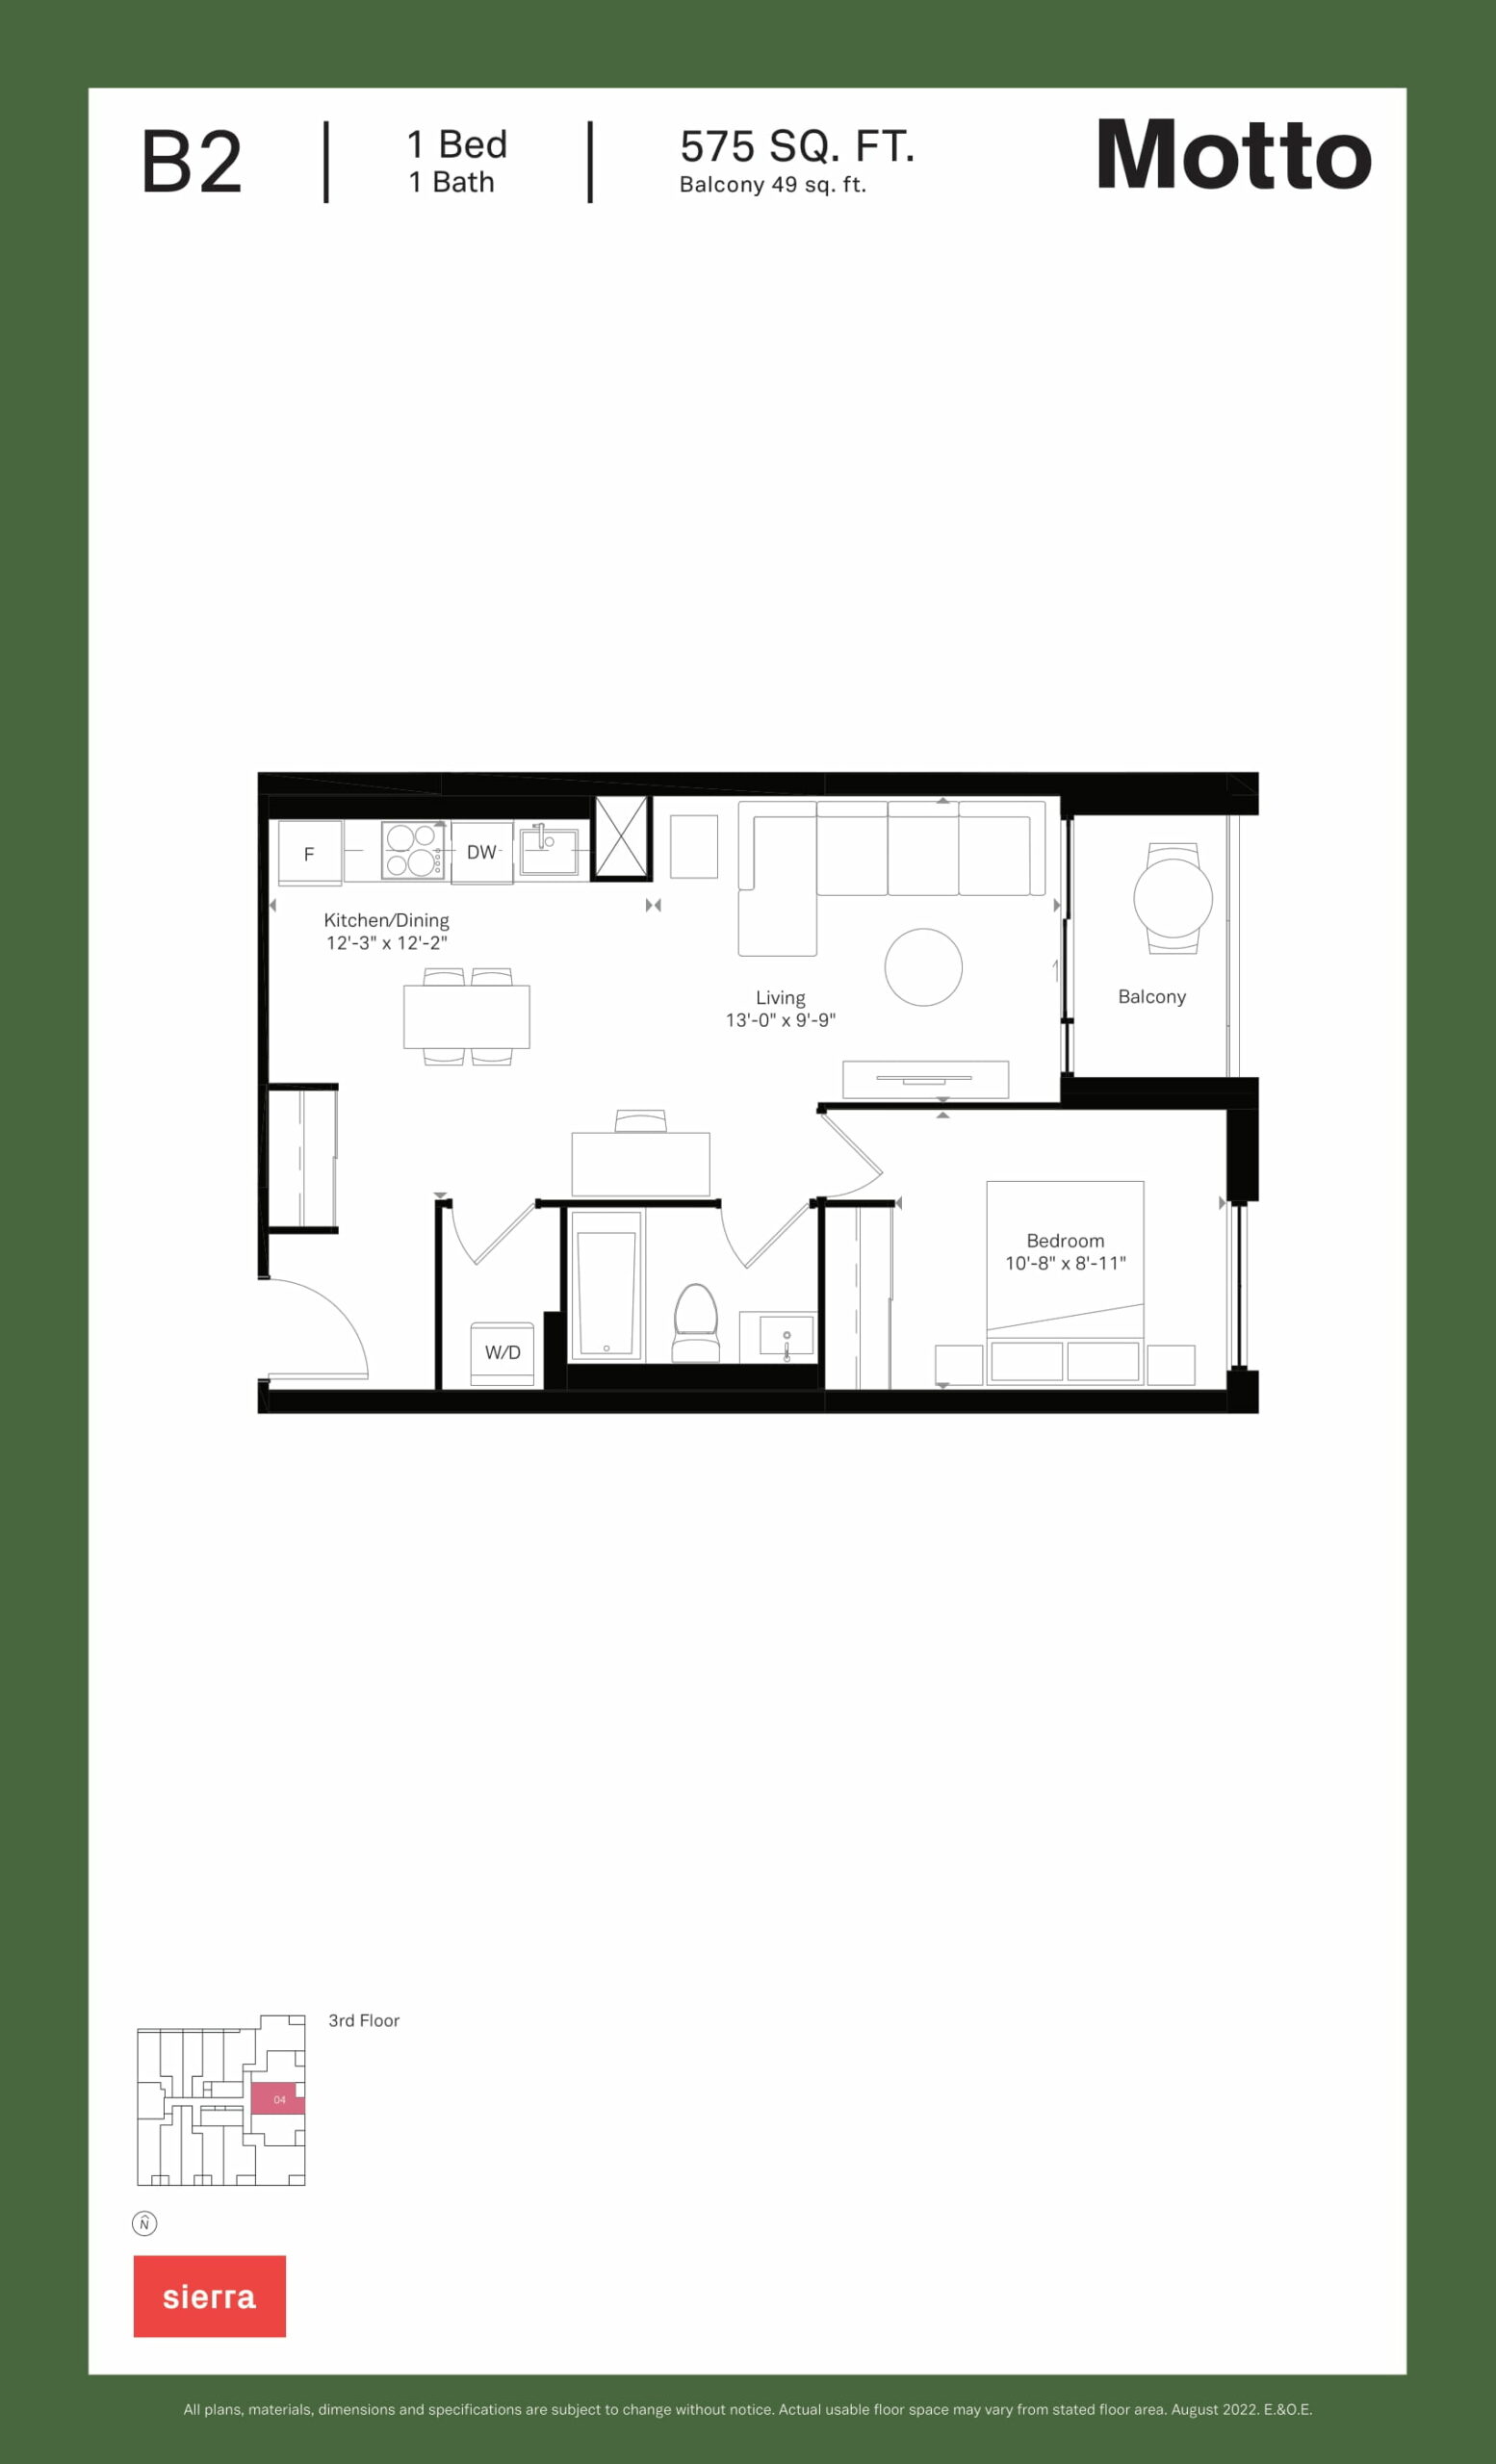 Motto - Floor Plans-05